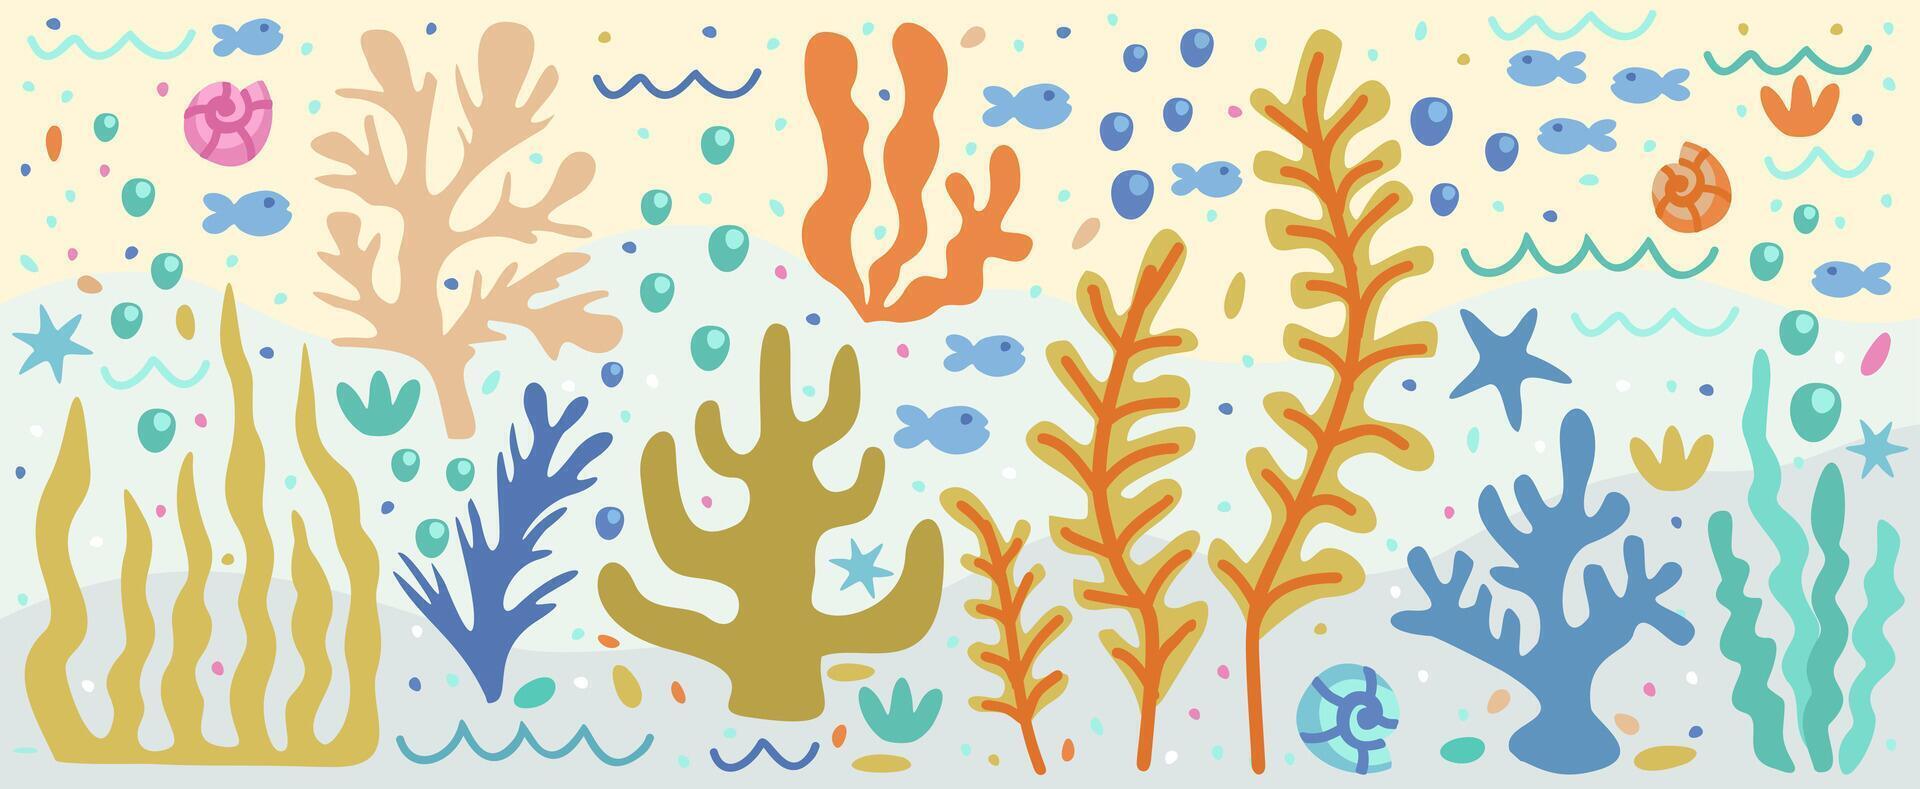 vector submarino conjunto con vistoso algas marinas, peces, conchas marinas, burbujas, olas y estrellas de mar